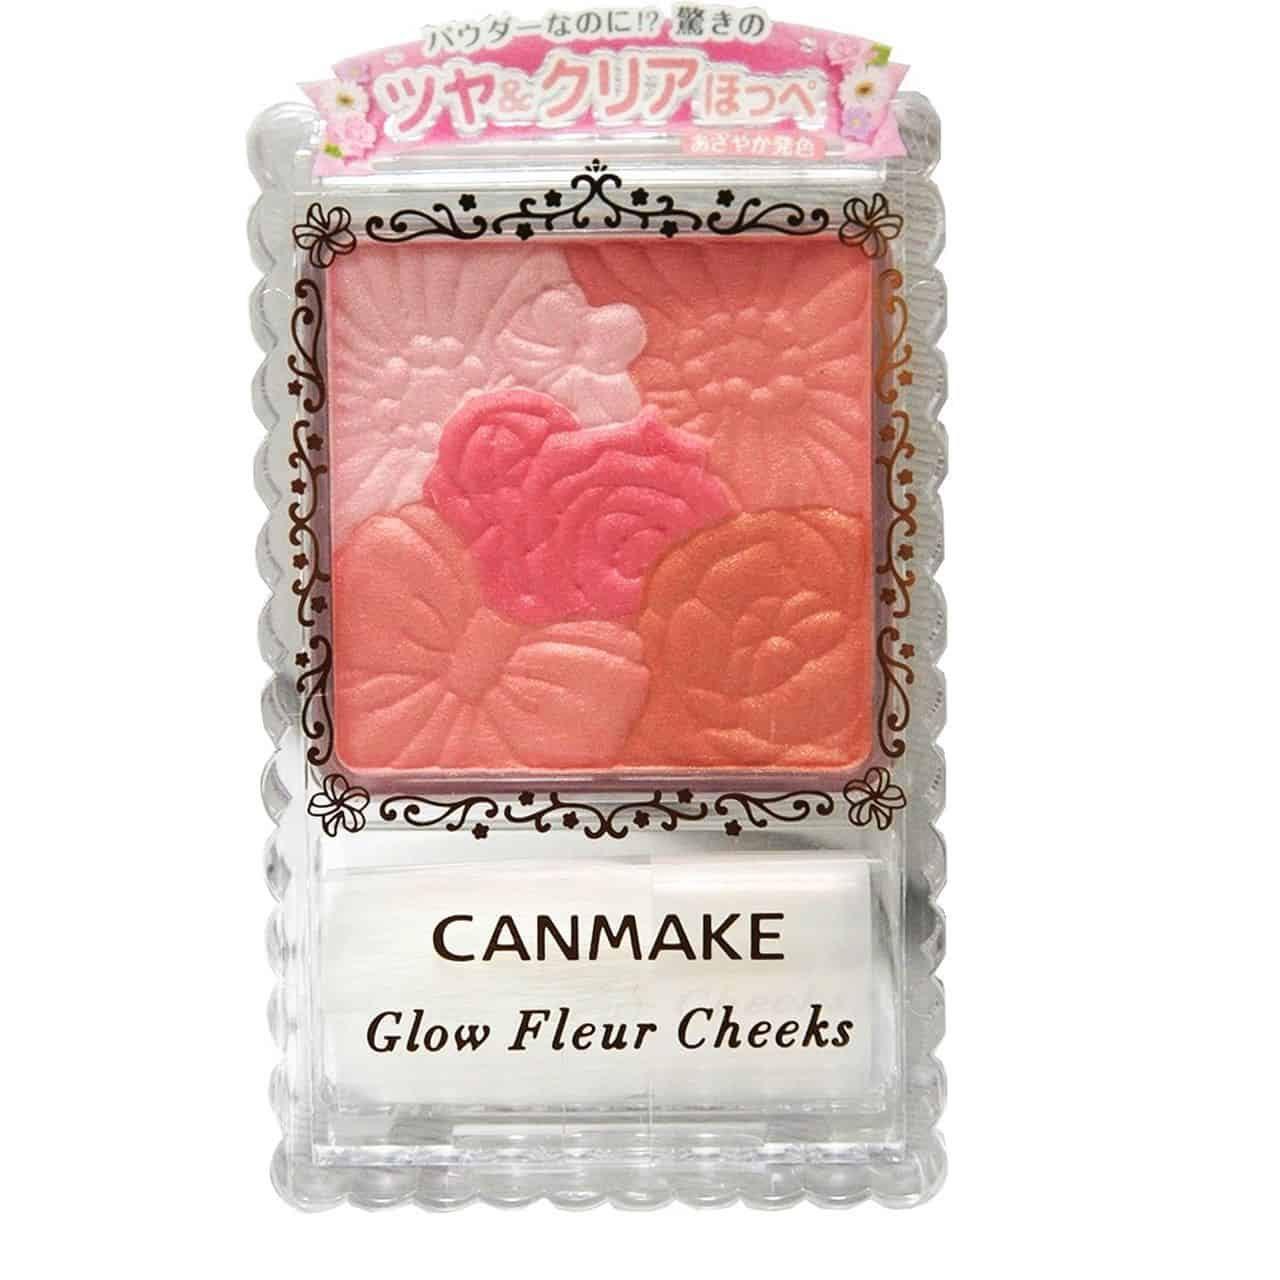 Phấn má hồng Canmake Glow Fleur Cheeks của Nhật có tốt không?